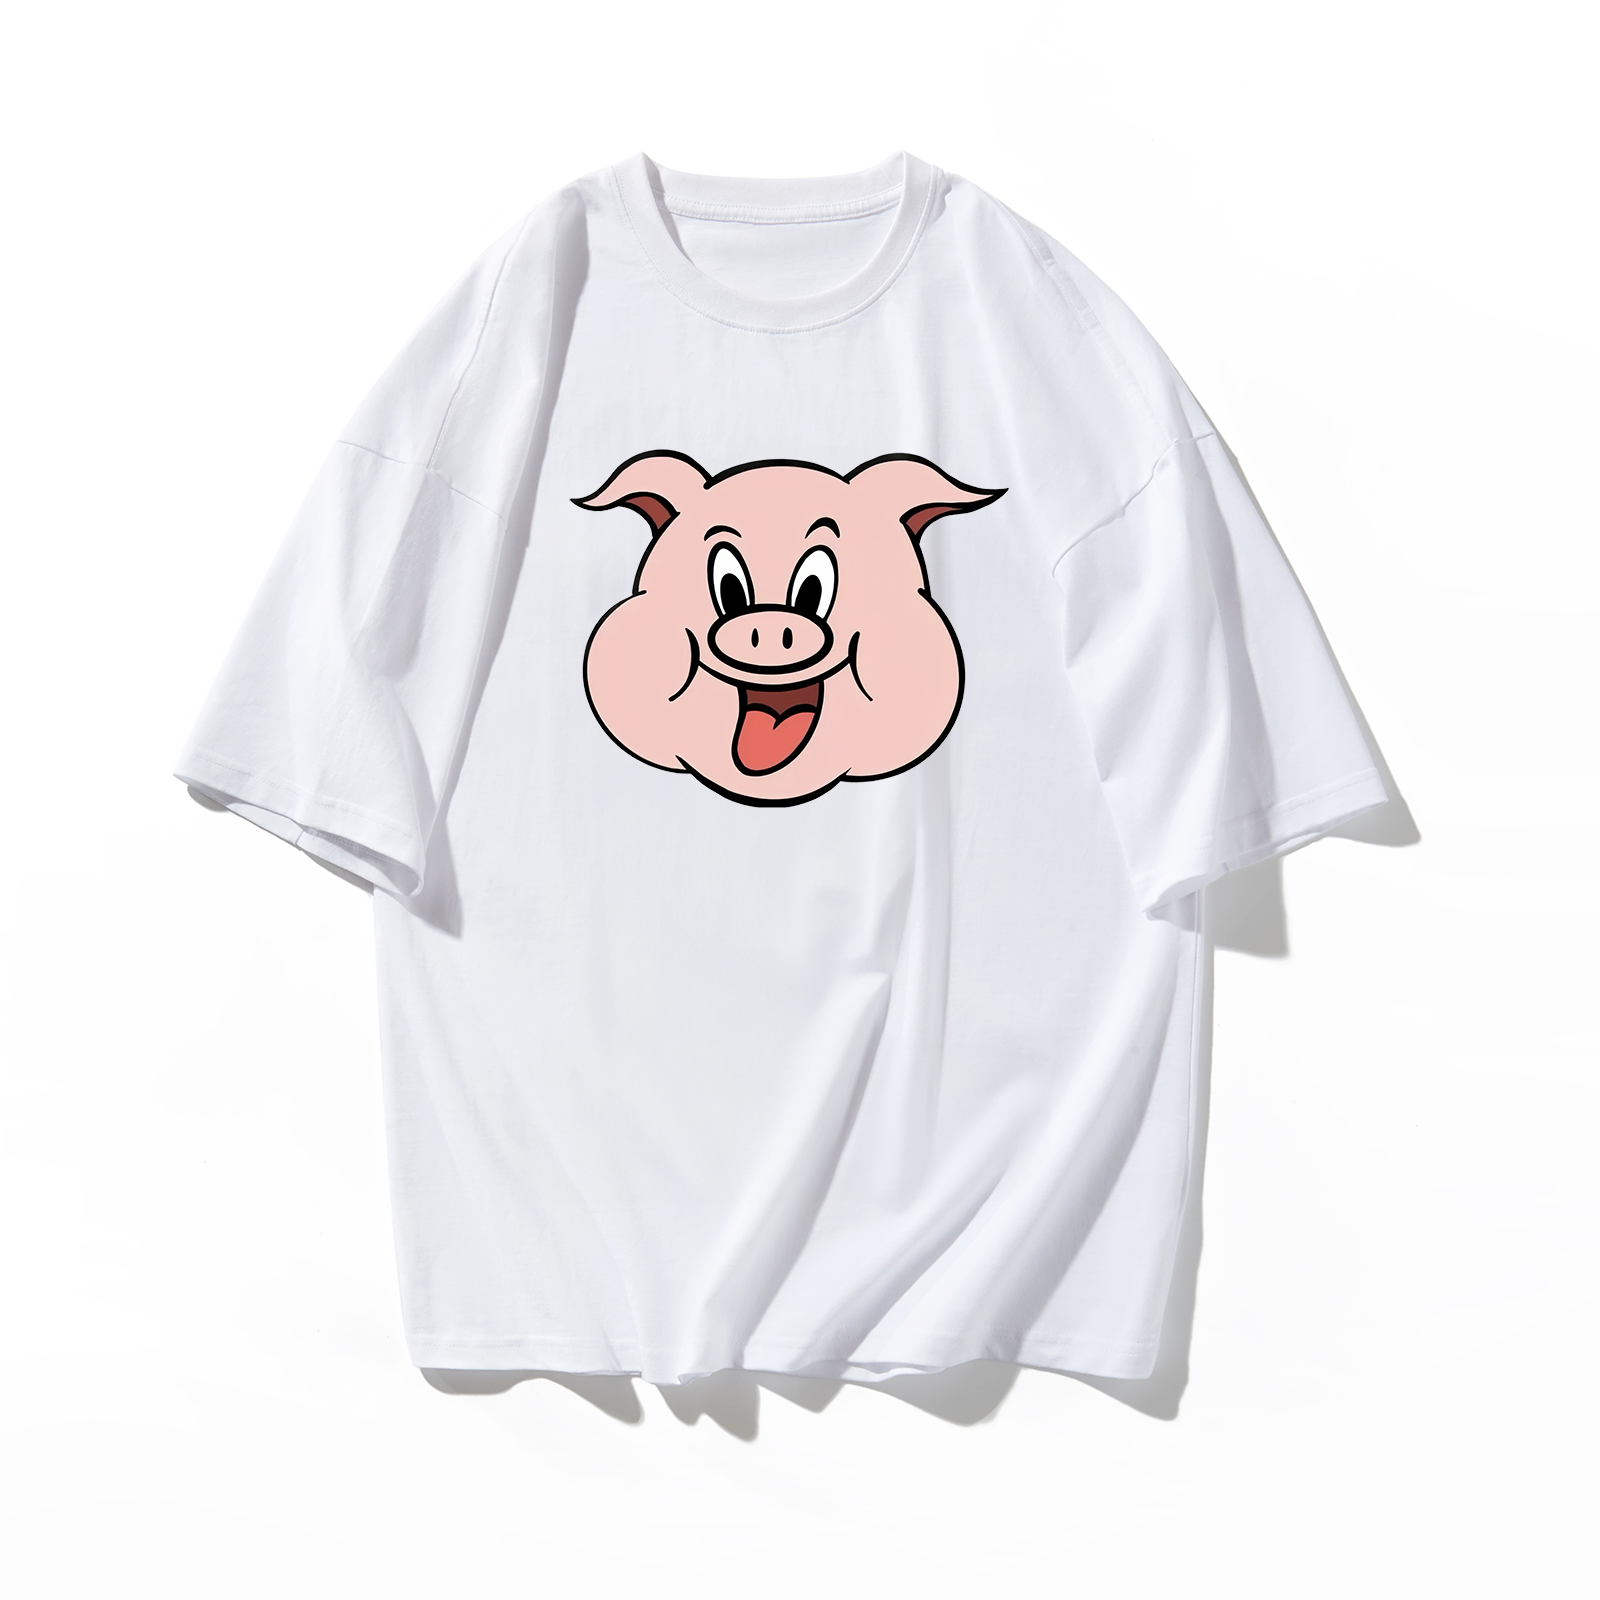 周处除三害陈桂林新造的人尊者T恤数码直喷可来图定制粉色小猪 - 图1